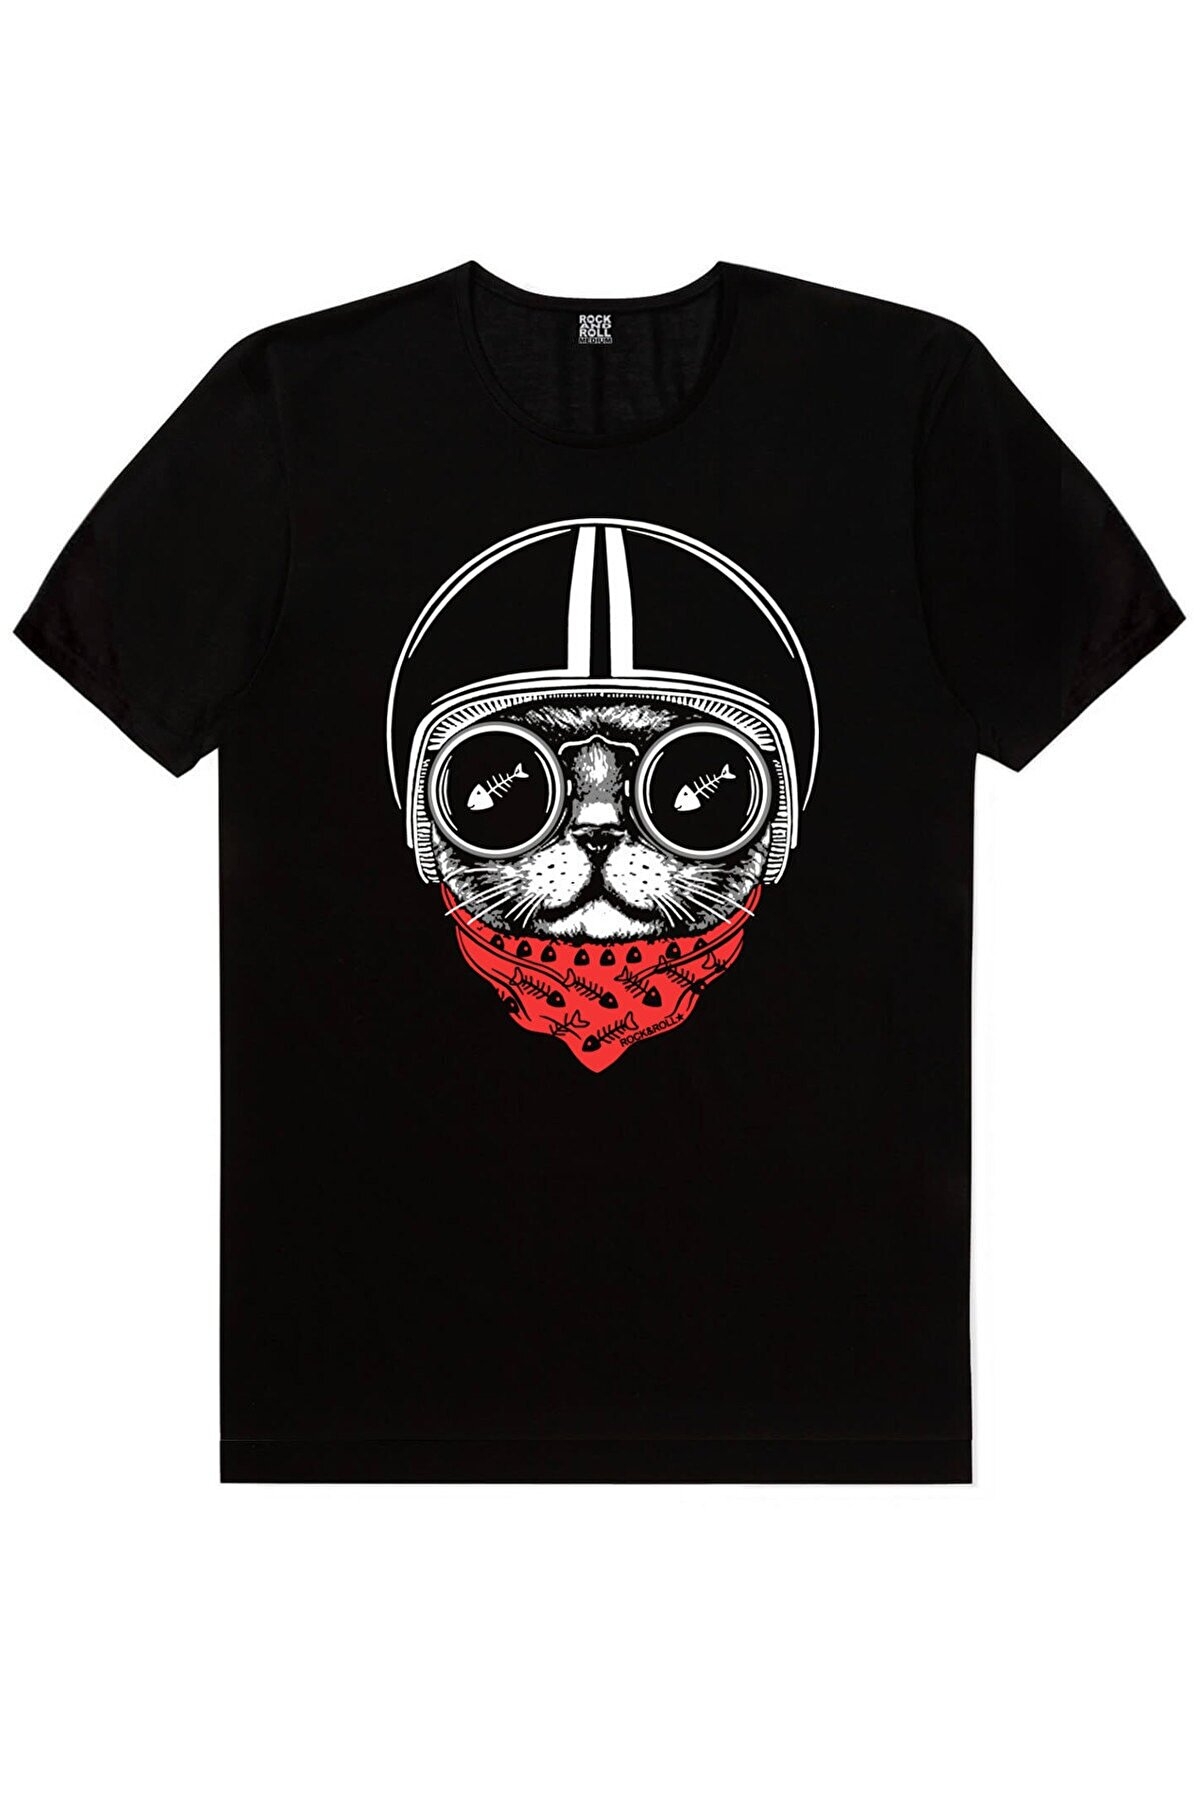 Kasklı Kedi, Meraklı, Panda Taklası Kadın 3'lü Eko Paket T-shirt